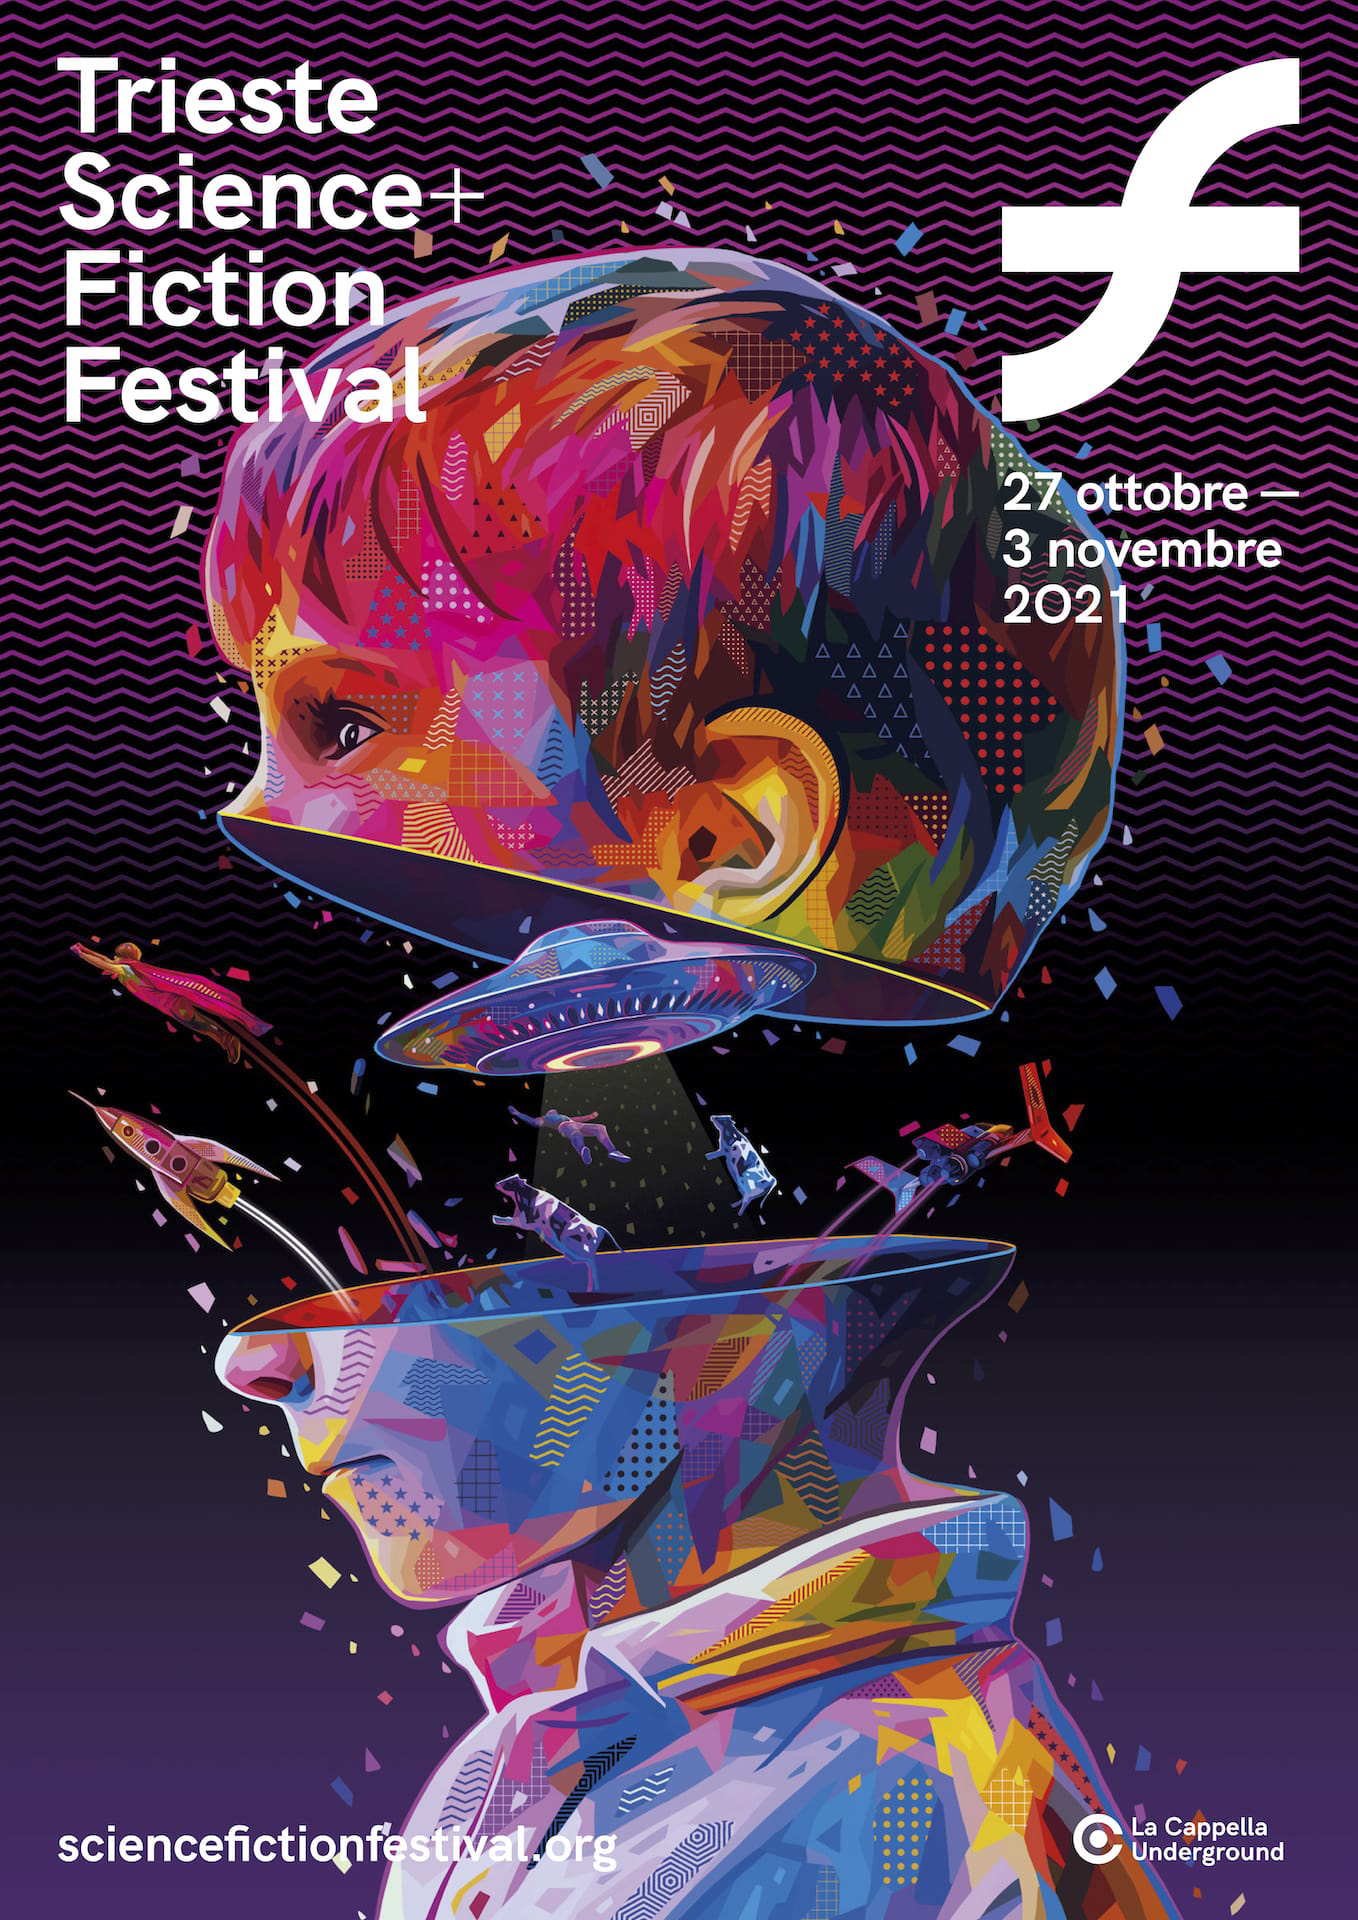 Trieste Science e Fiction Festival 2021: il poster della 21a edizione realizzato da KANEDA